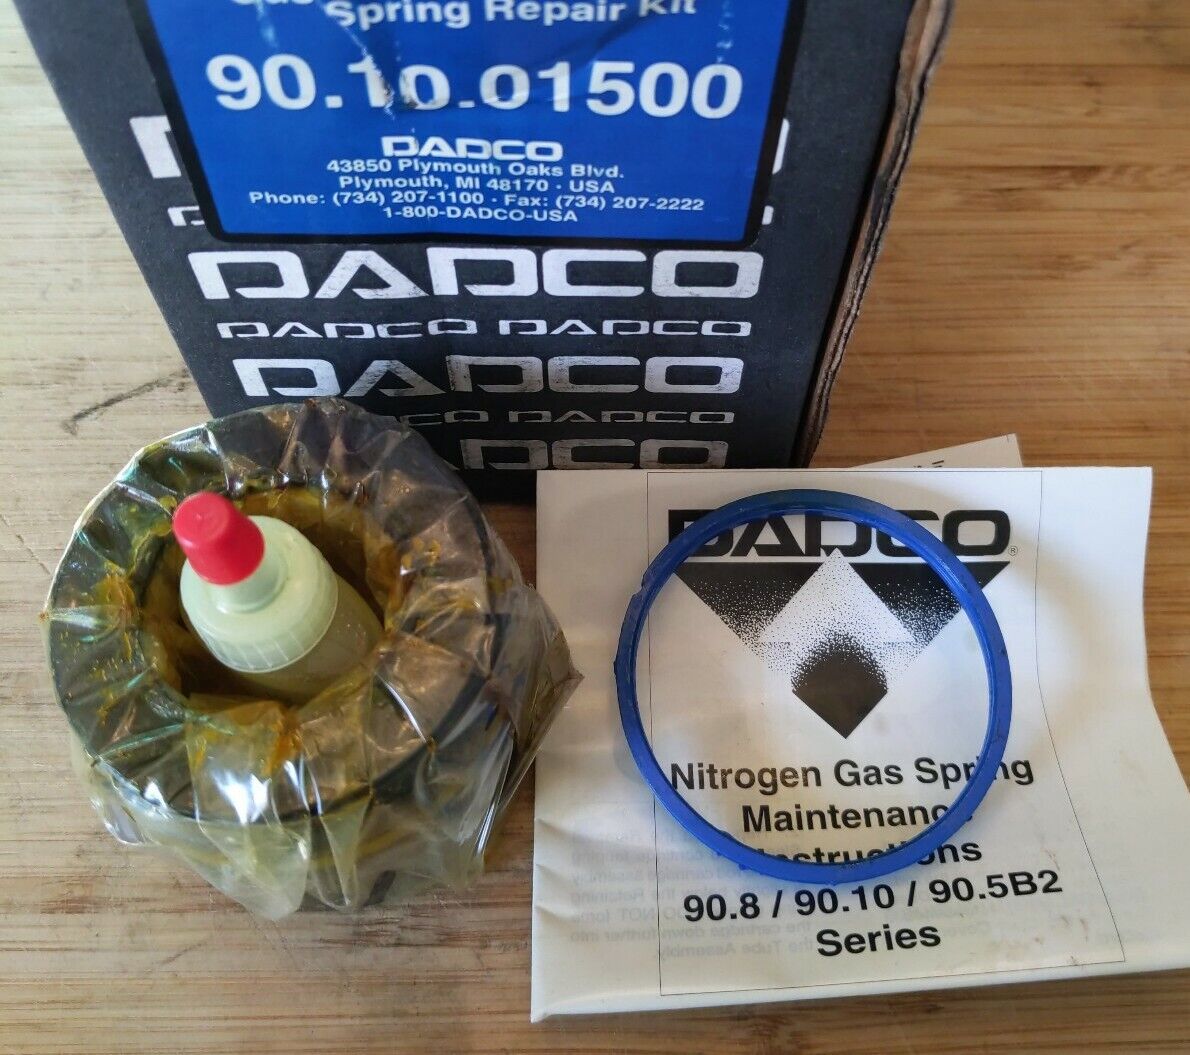 DADCO 90.10.01500 Genuine Gas Spring Repair Kit (RE202) - 0